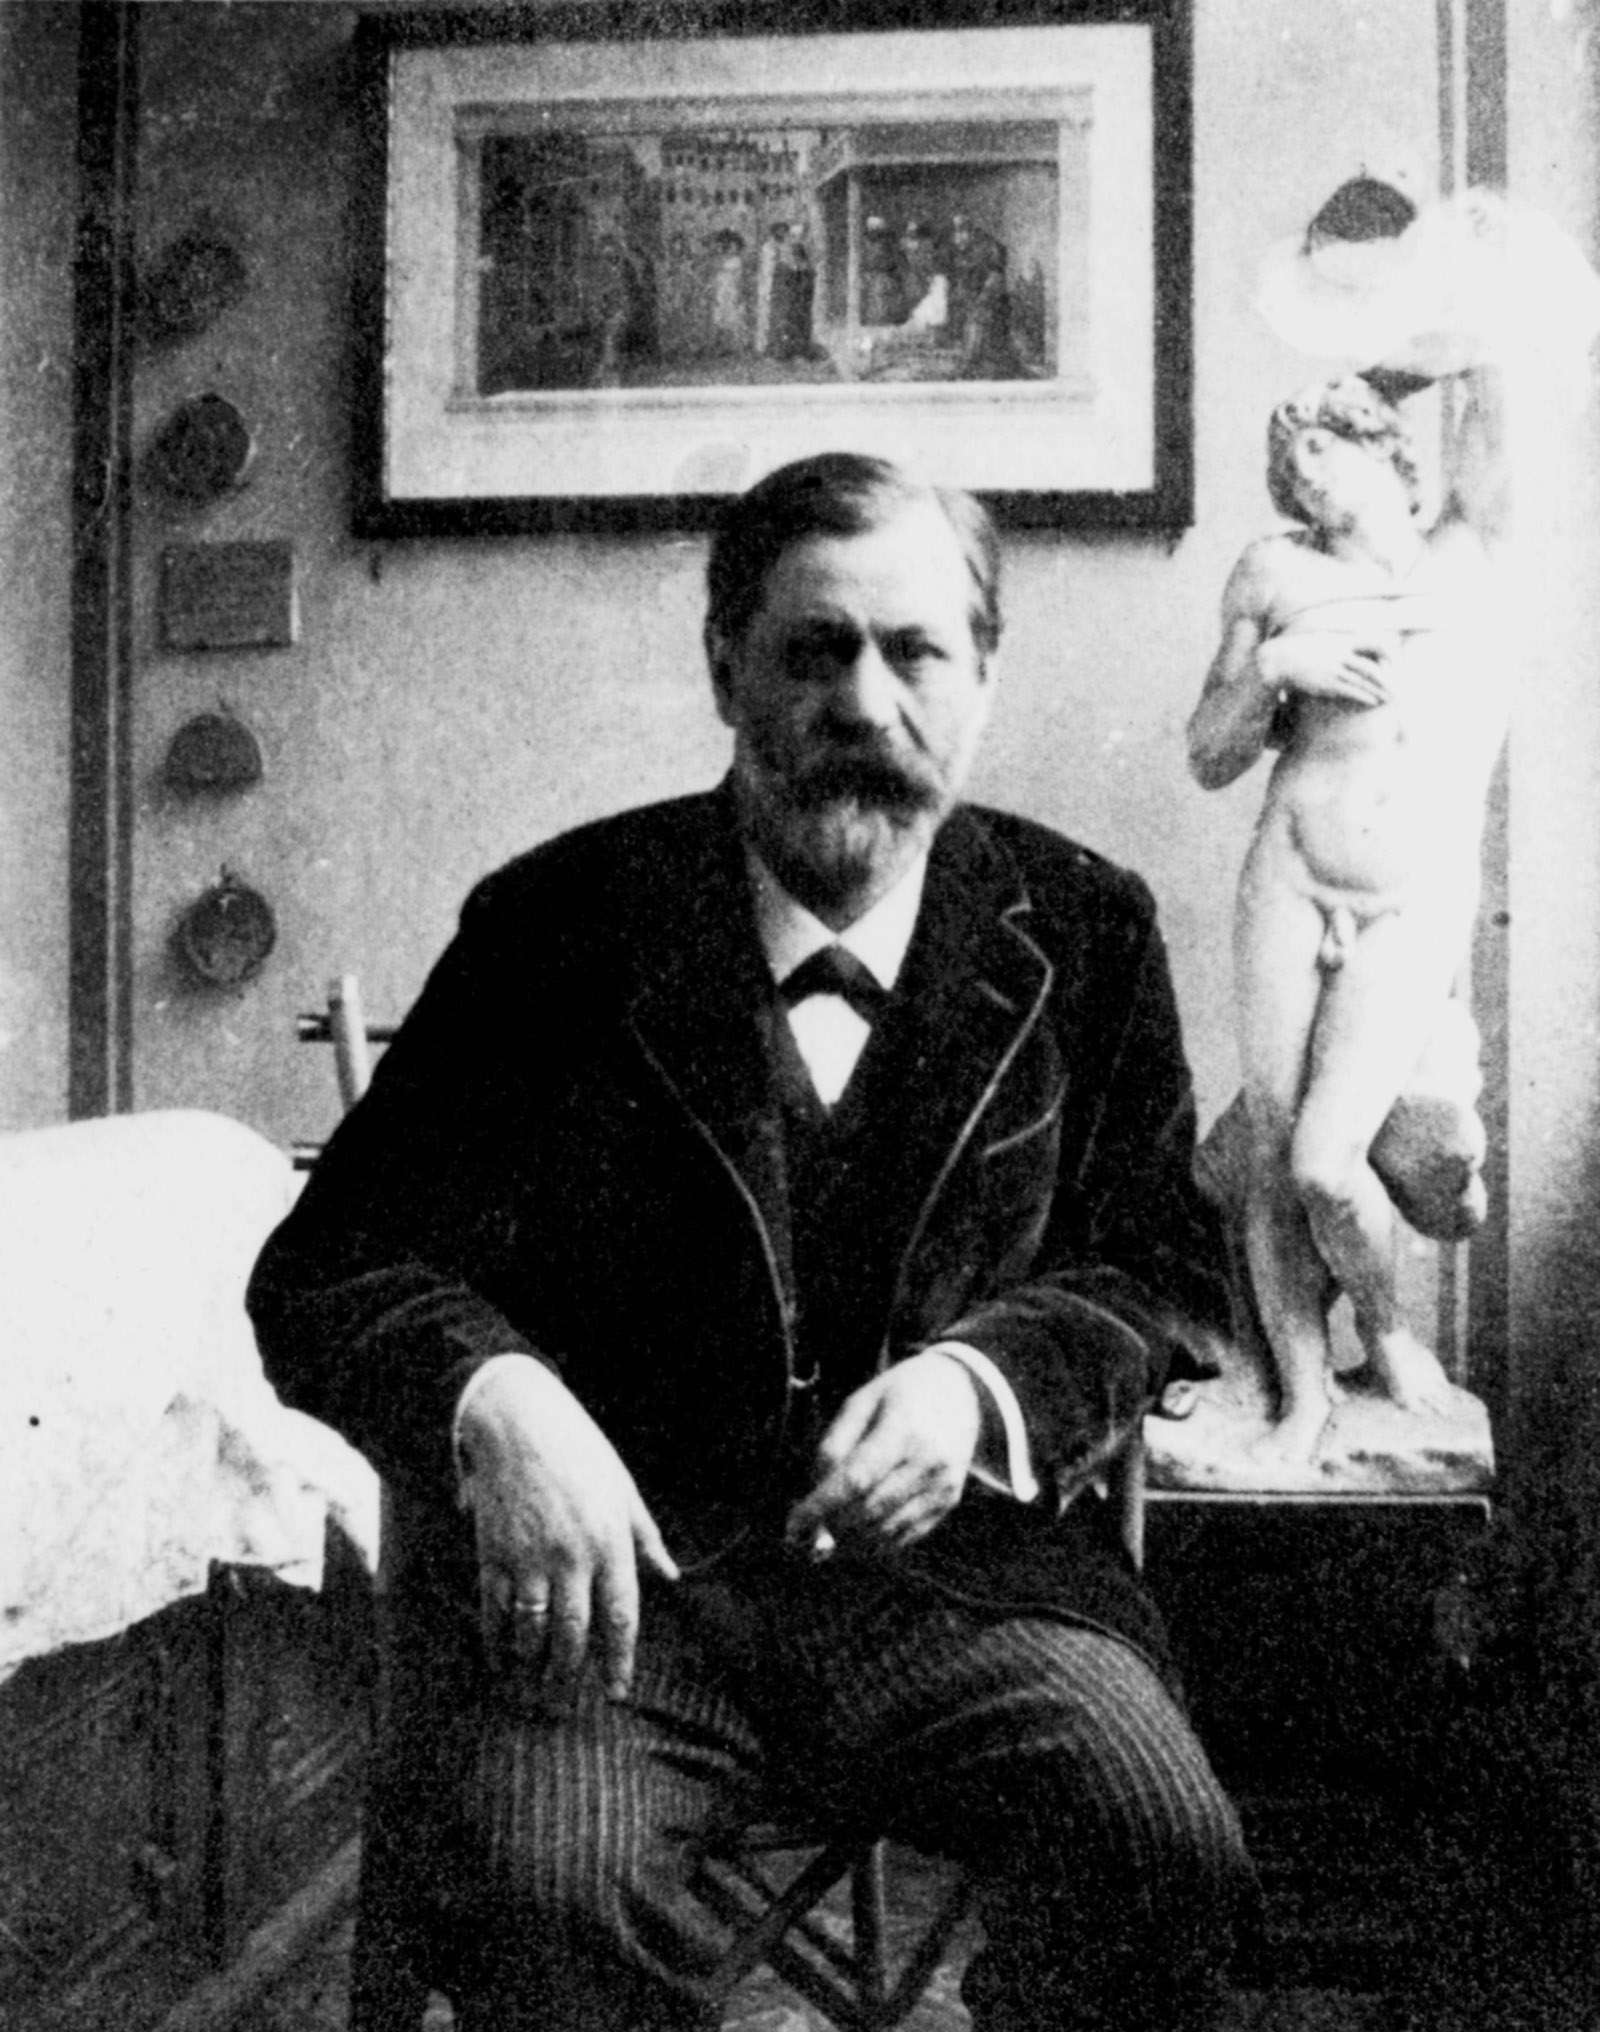 Sigmund Freud, Vienna, 1911